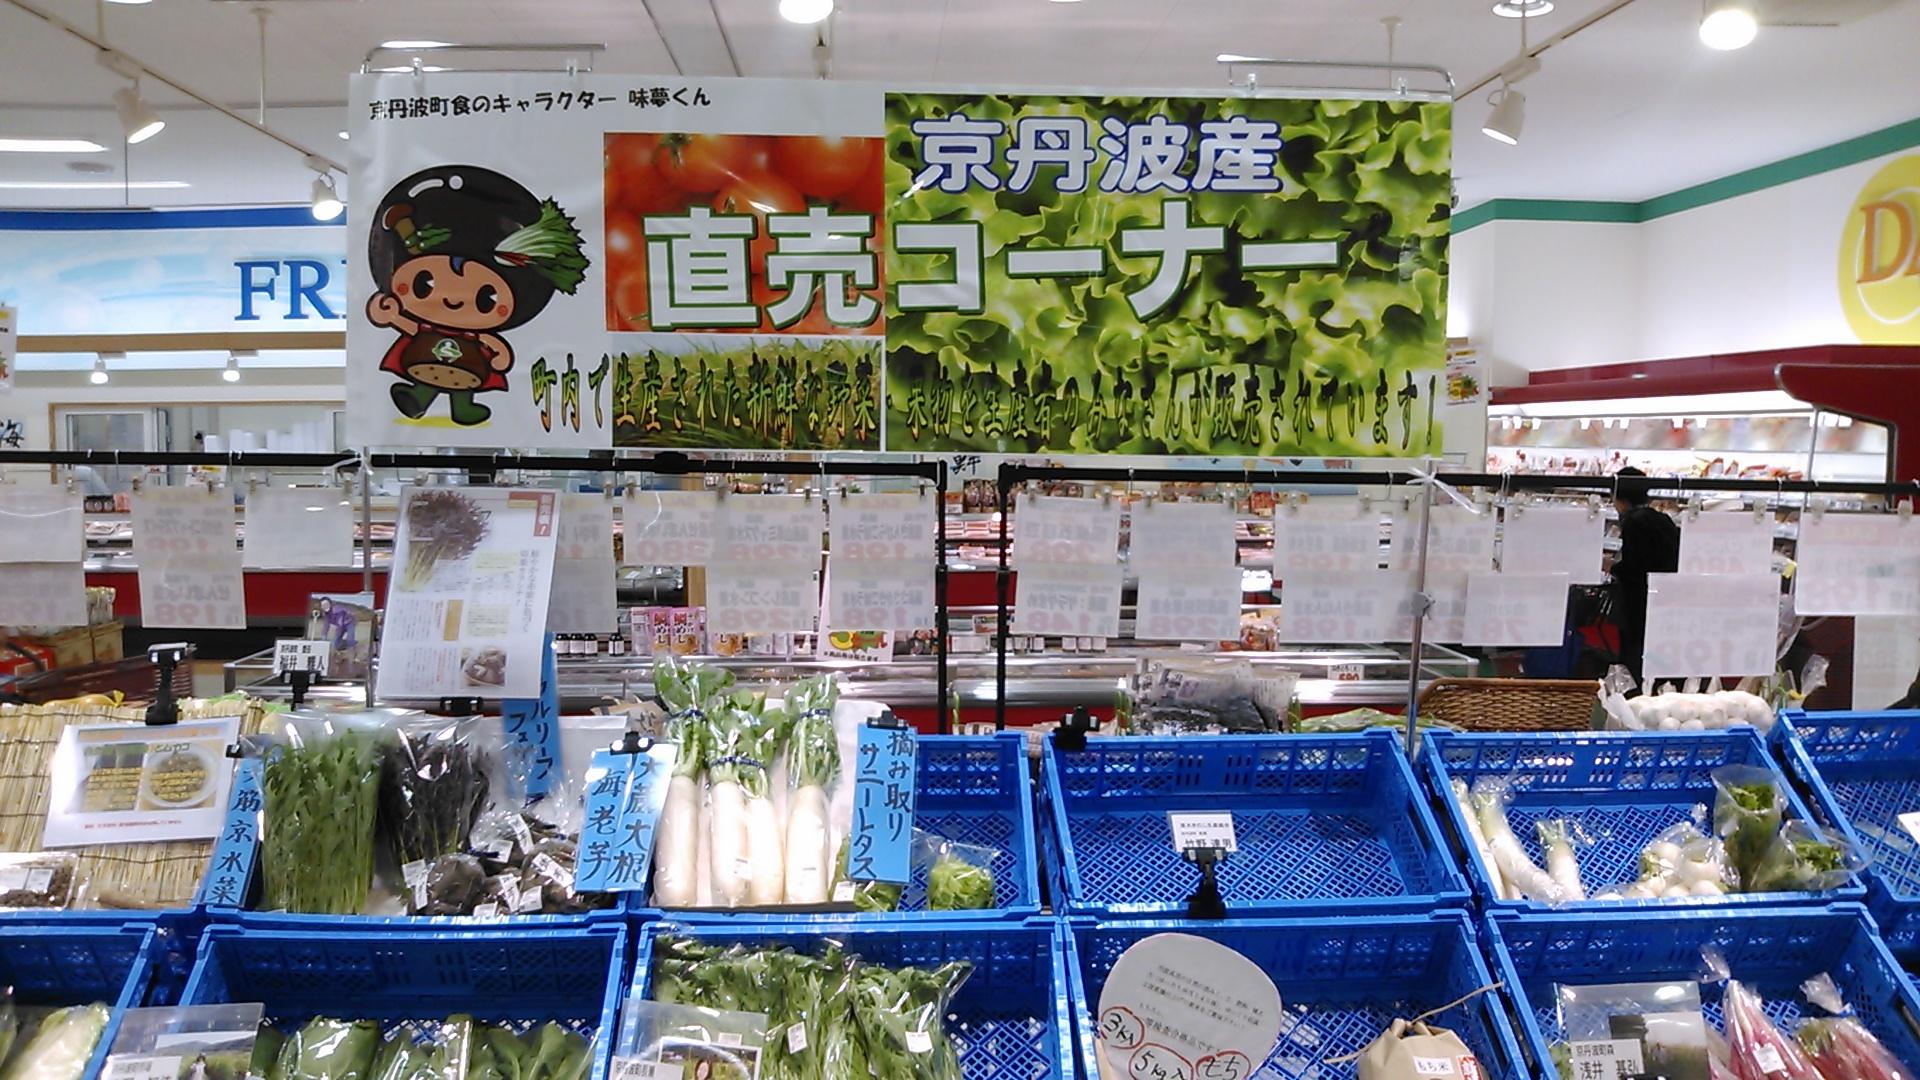 京丹波産直売コーナーと書かれ、青いかごに野菜並べられ、販売されている写真